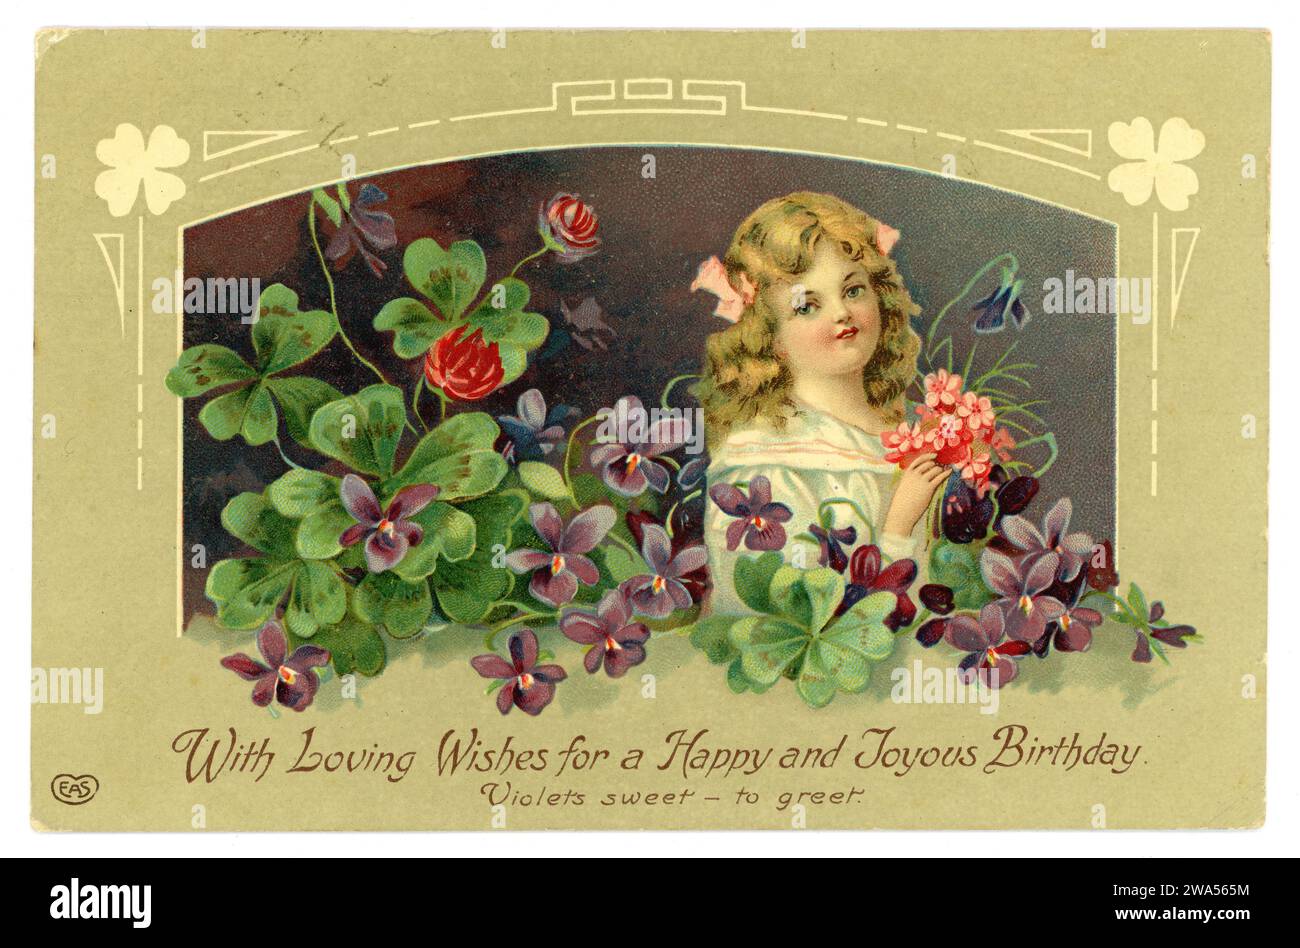 Originale biglietto di auguri di compleanno dell'epoca edoardiana di una giovane ragazza tra le violette che reggono un mazzo di fiori rosa, pubblicato E.A. Schwerdtfeger Co. Londra. Pubblicato il 14 maggio 1910, Brighton. Foto Stock